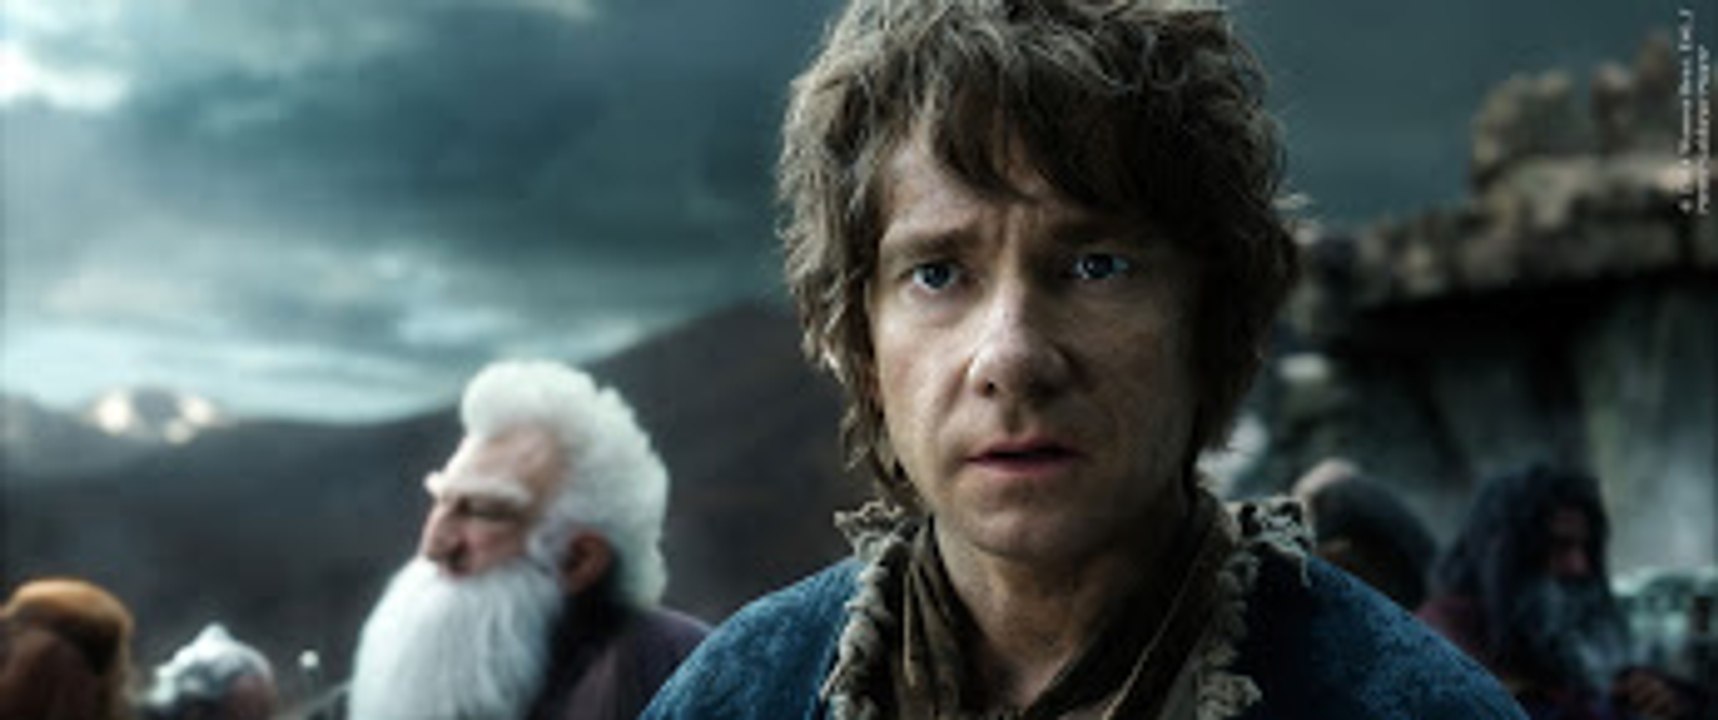 Frodo, Bilbo und das Vermächtnis zu Der Hobbit 3 (Deutsch)